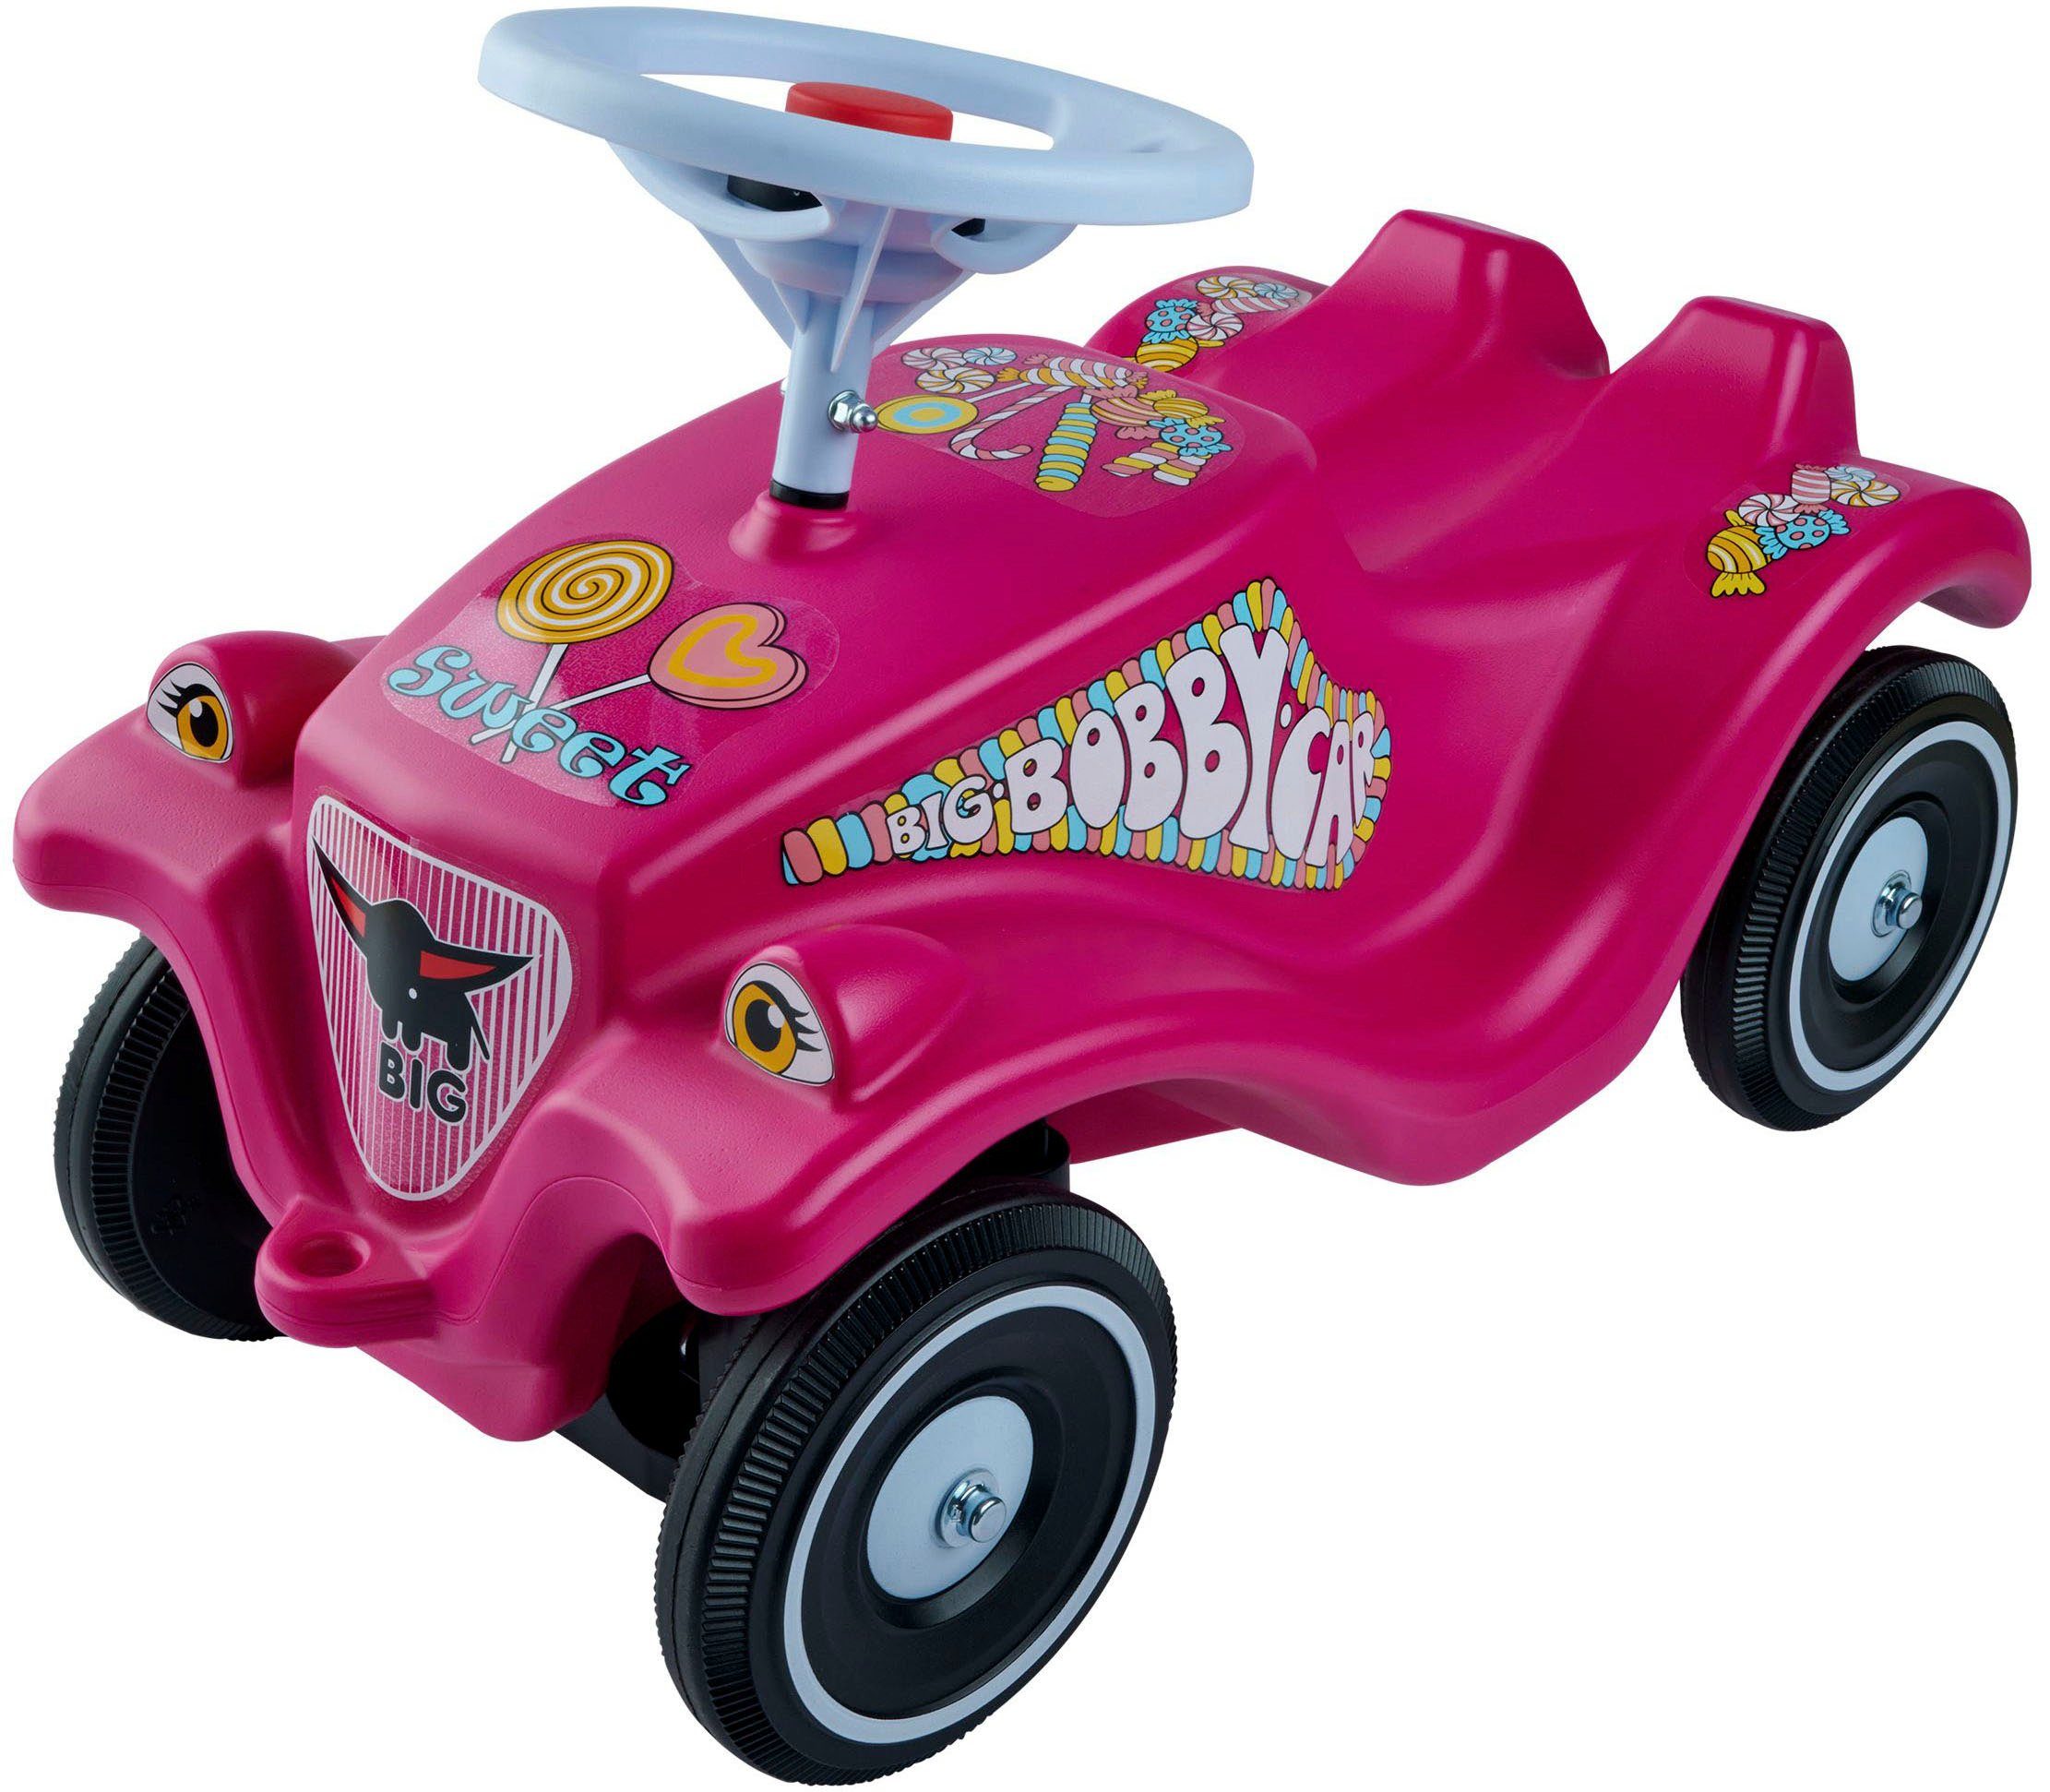 BIG Rutscherauto BIG-Bobby-Car-Classic Candy, Made in Germany, Ergonomische  Sitzfläche mit Sicherheits-Kniemulde